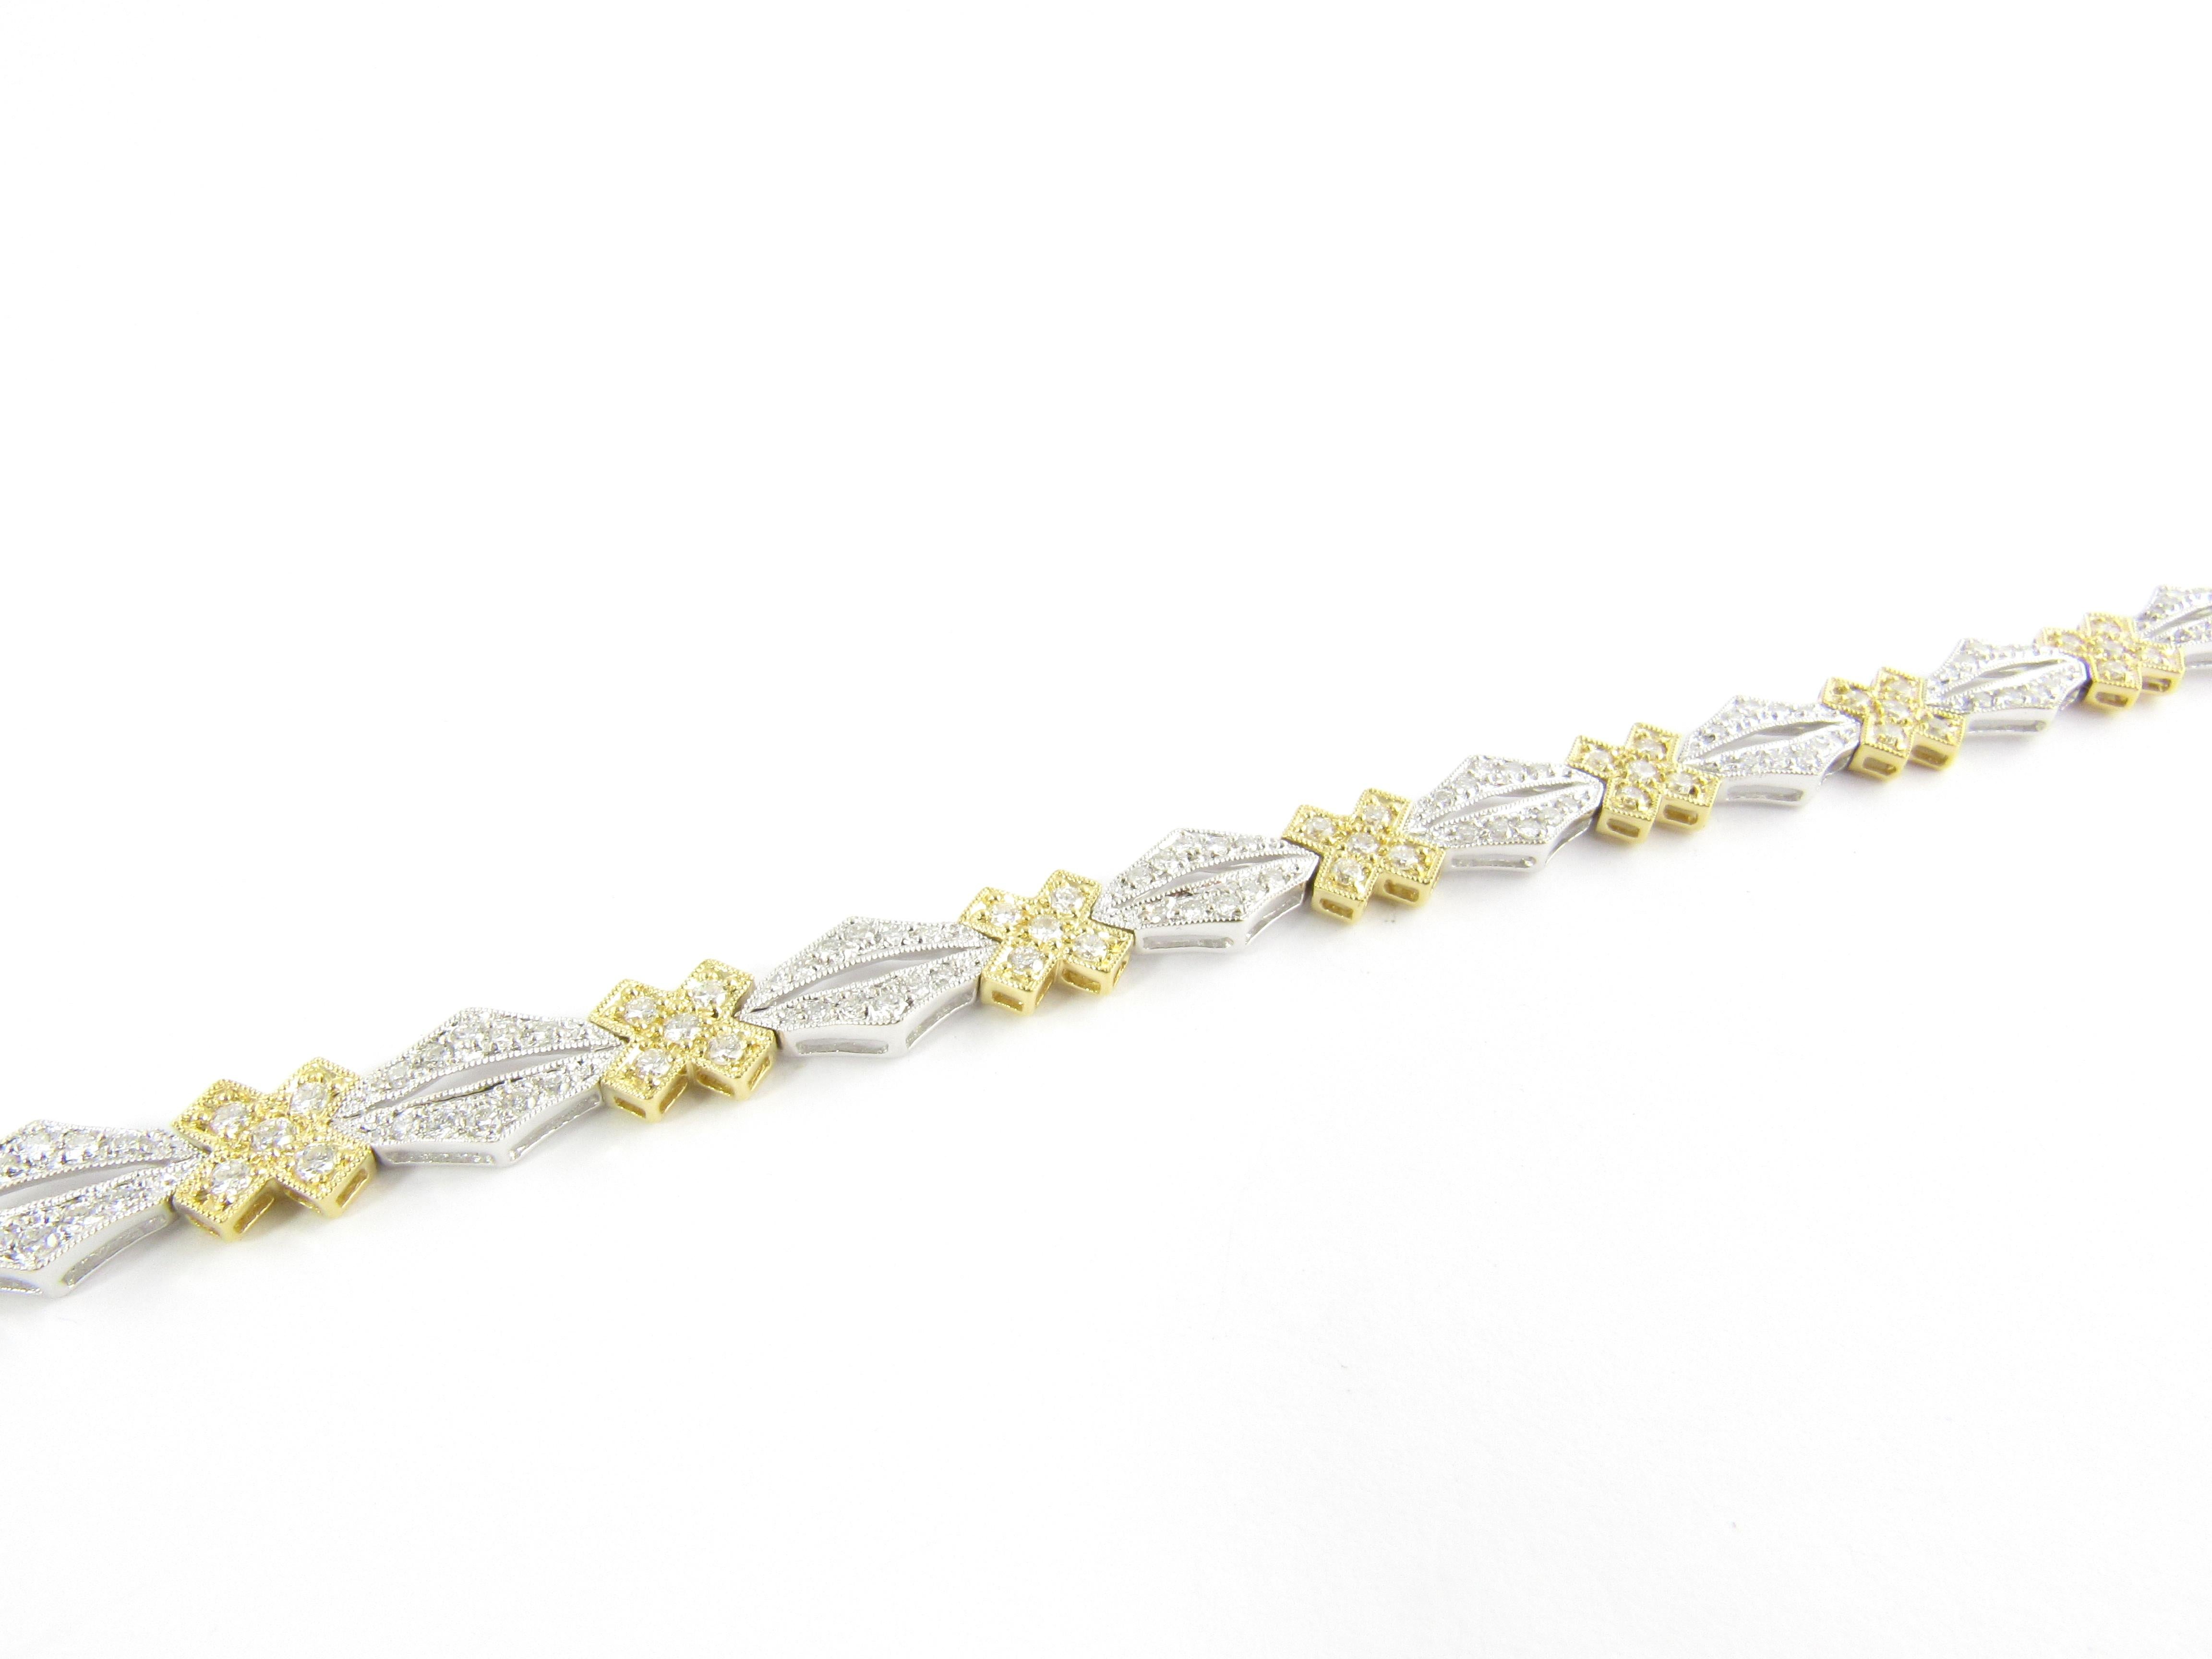 Vieux bracelet en or jaune et blanc 18 carats avec diamants

Ce bracelet spectaculaire présente 198 diamants ronds de taille brillant sertis dans de l'or blanc et jaune 18K magnifiquement détaillé. Largeur : 7 mm. Fermetures de sécurité.

Poids